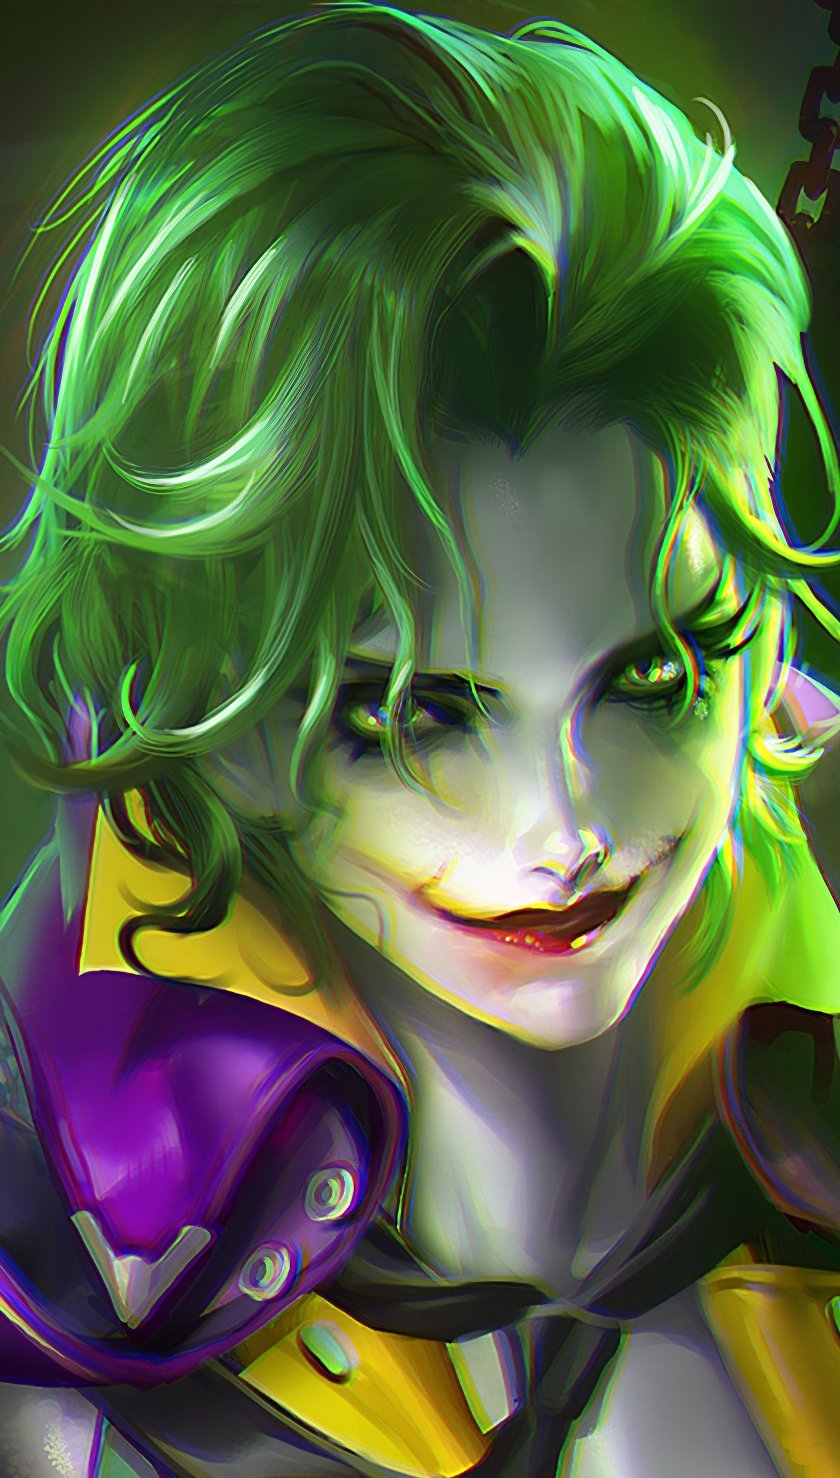 Wallpaper Joker Girl Artwork Vertical.